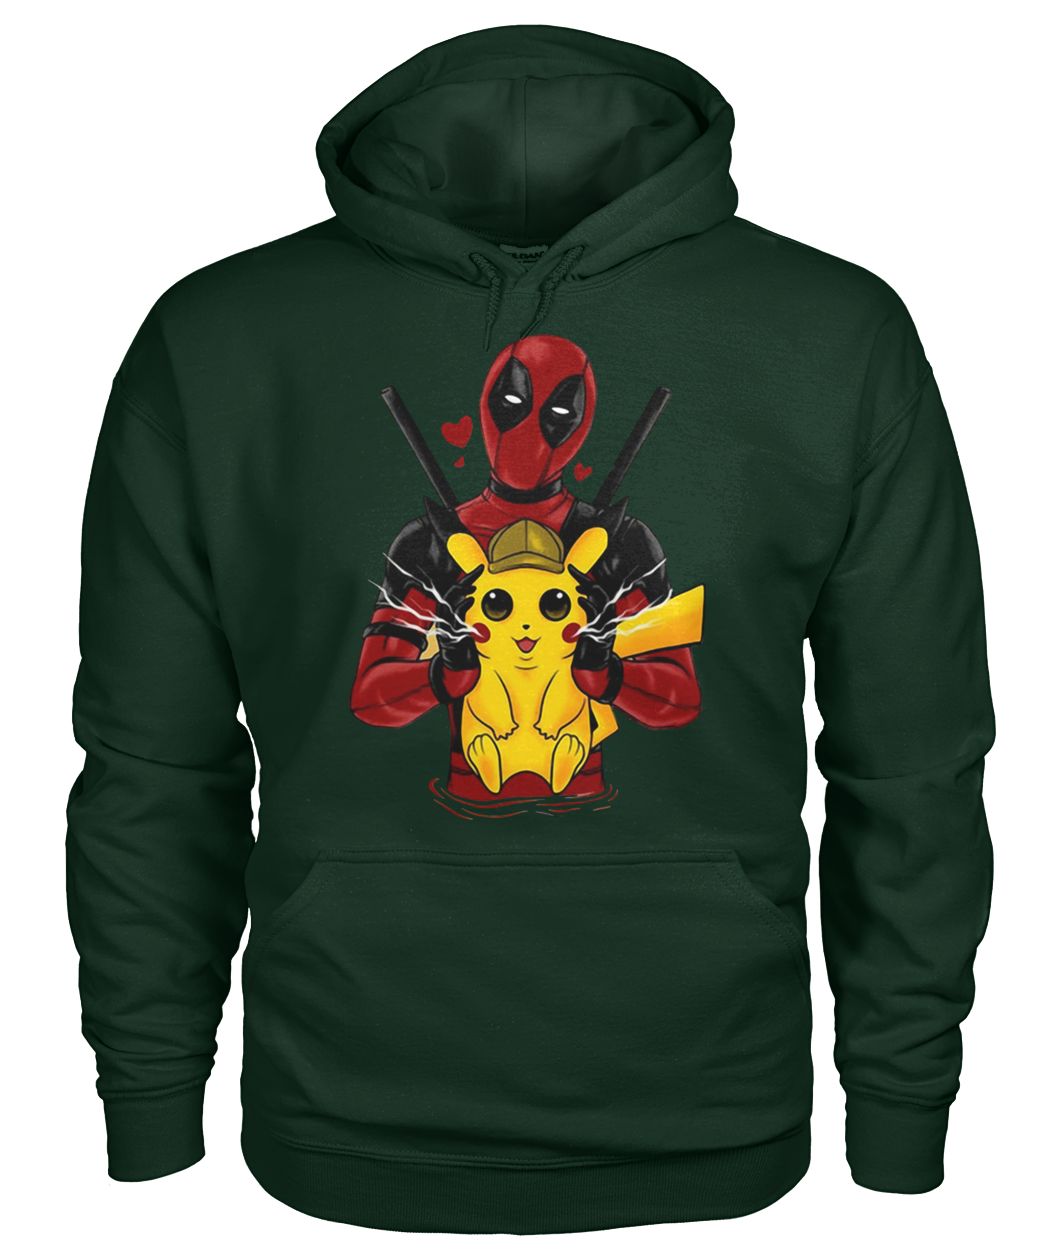 Deadpool hugging detective Pikachu gildan hoodie